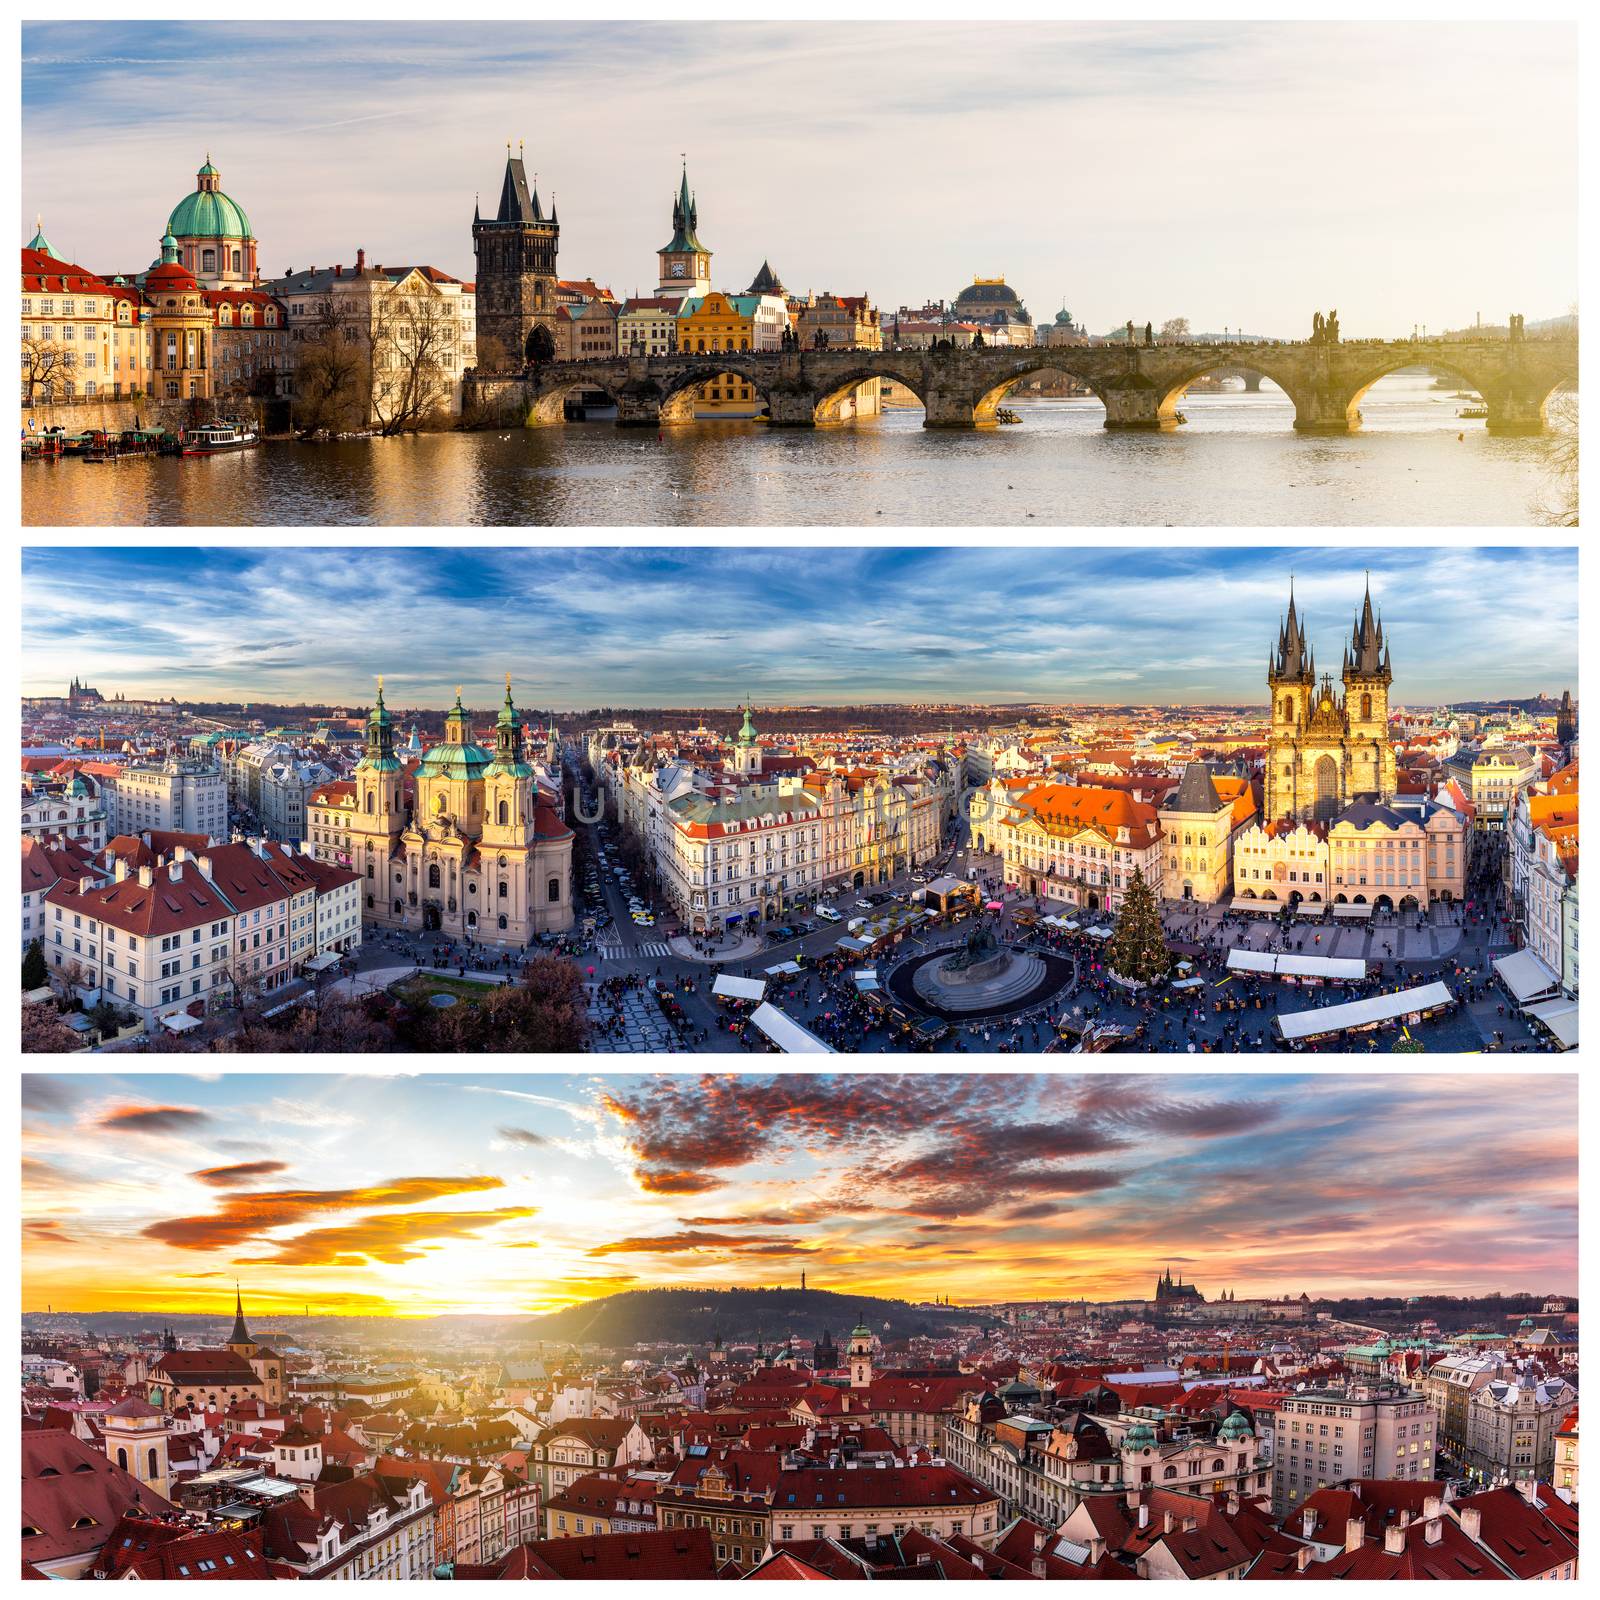 Collage of landmarks of Prague. Charles bridge, Cathedral of Sai by DaLiu